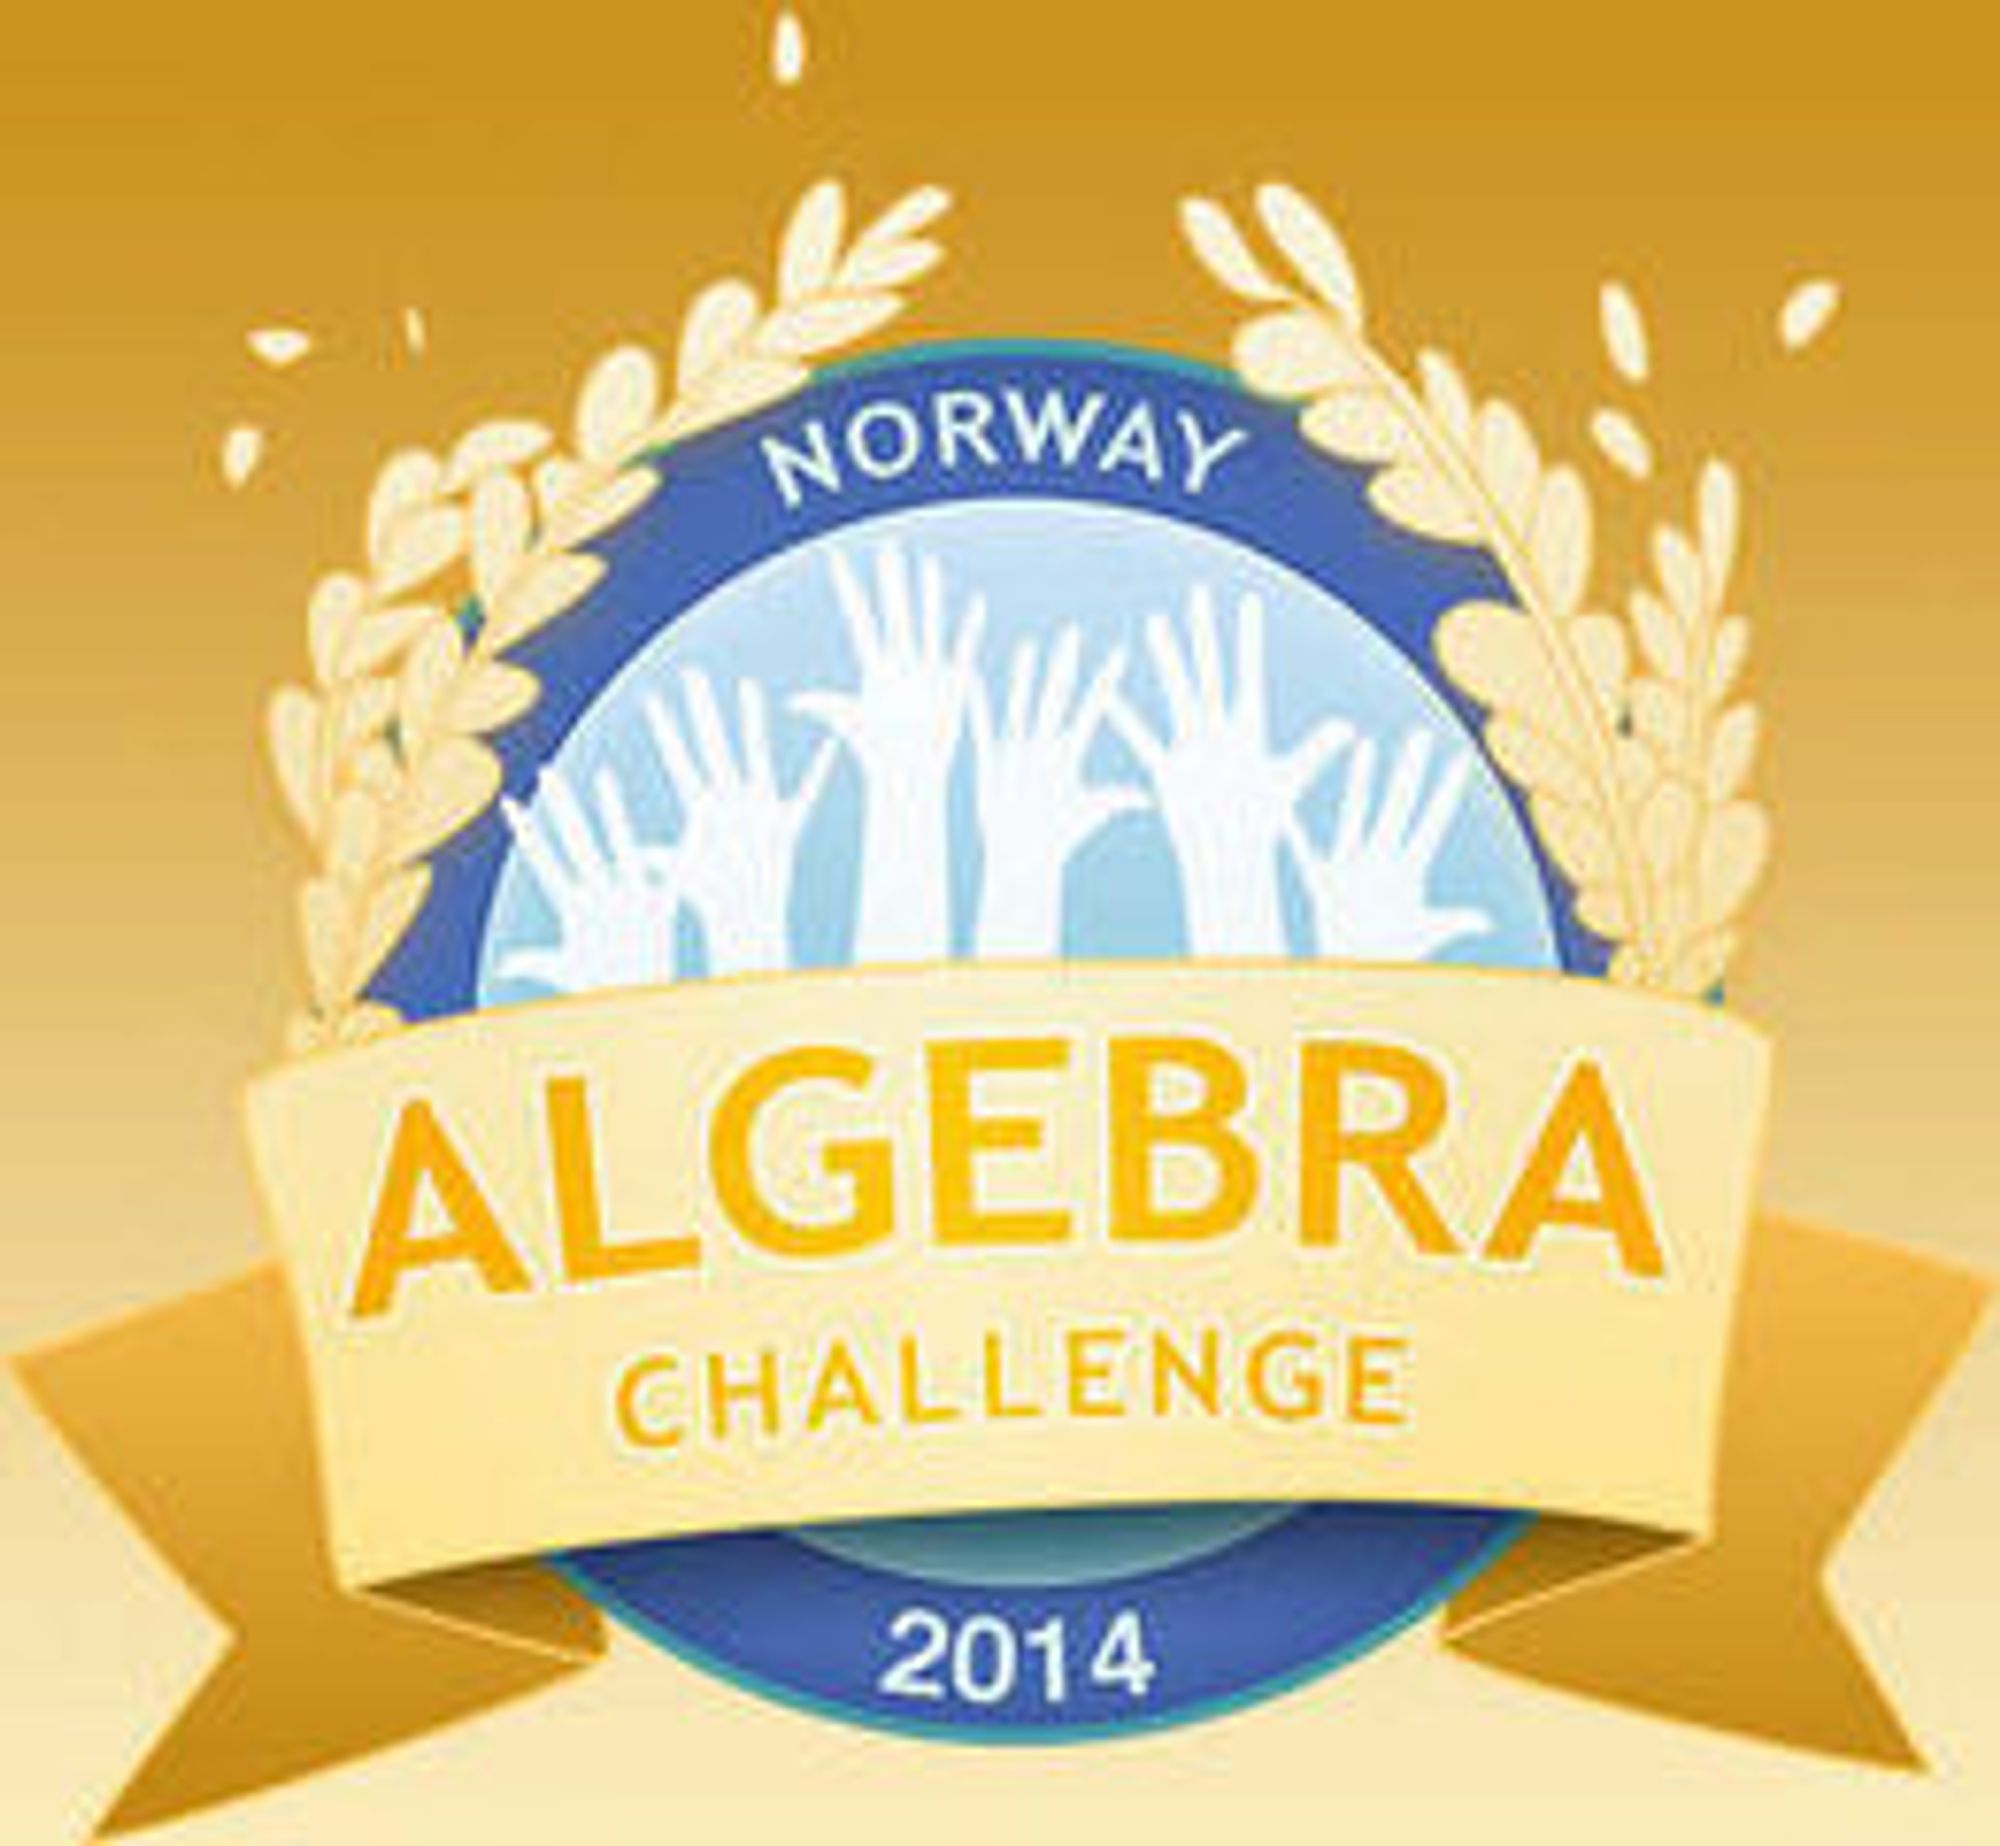 Algebra Challenge Norway engasjerer 40 000 elever på alle trinn. Konkurransen bygger på det norskutviklede spillet DragonBox, og avsluttes fredag ettermiddag.